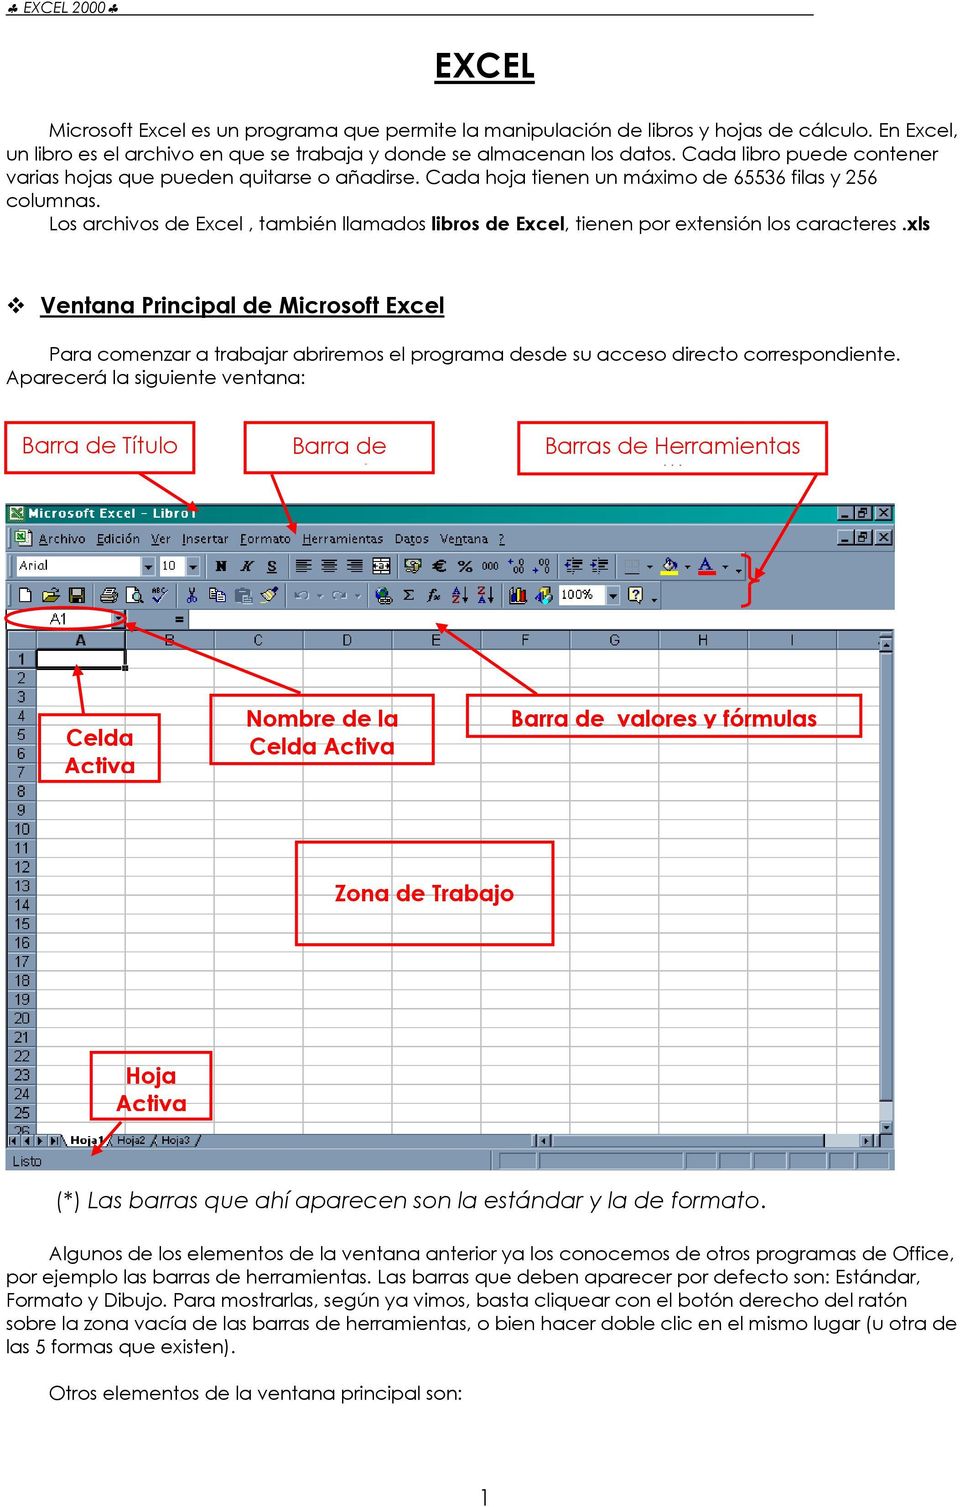 Los archivos de Excel, también llamados libros de Excel, tienen por extensión los caracteres.